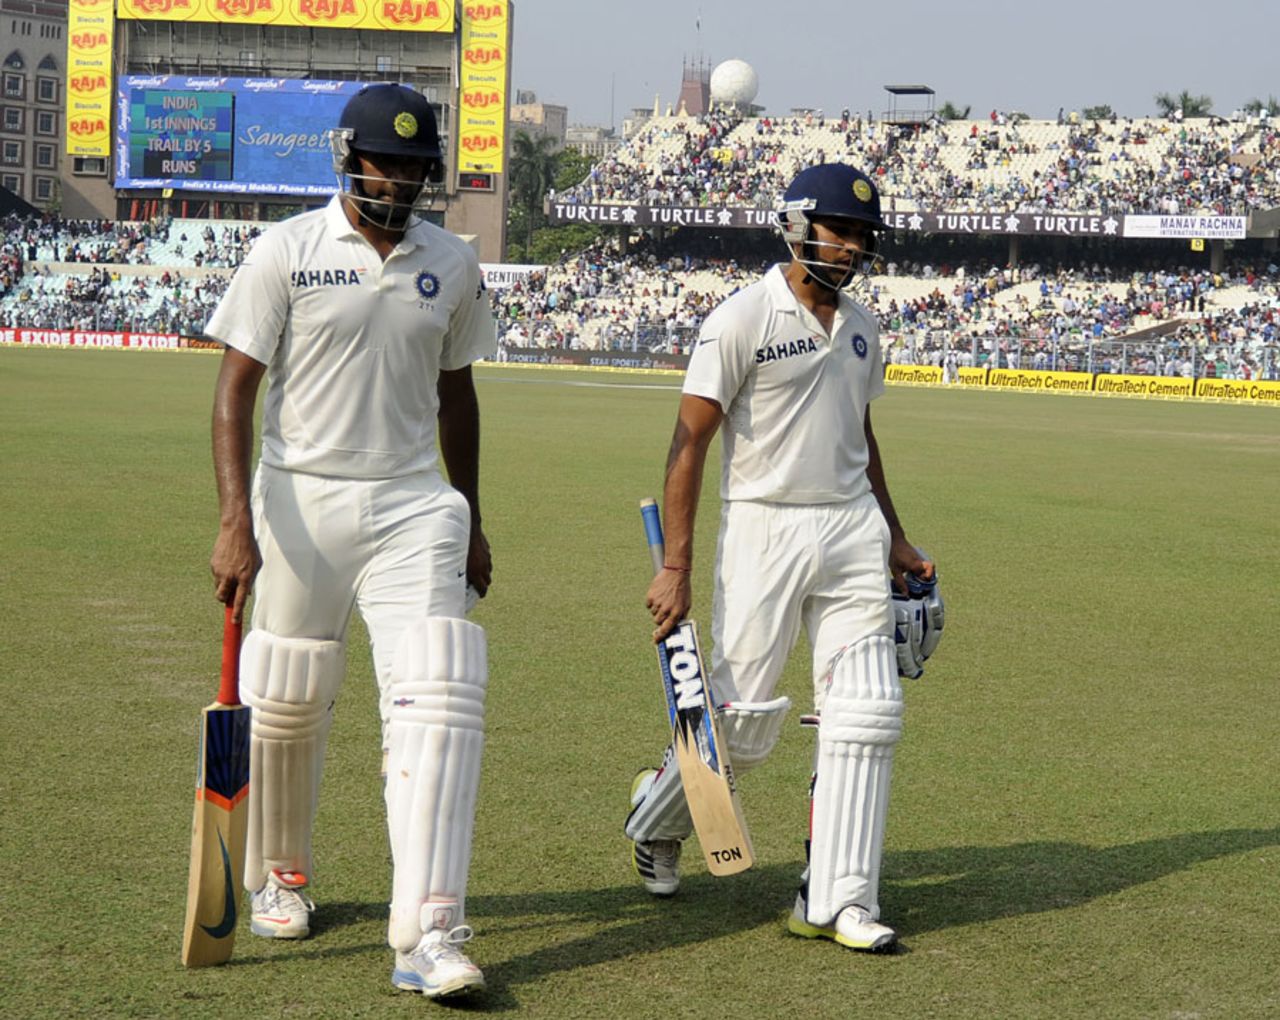 R Ashwin and Rohit Sharma added 73 runs before the tea break, India v West Indies, 1st Test, Kolkata, 2nd day, November 7, 2013